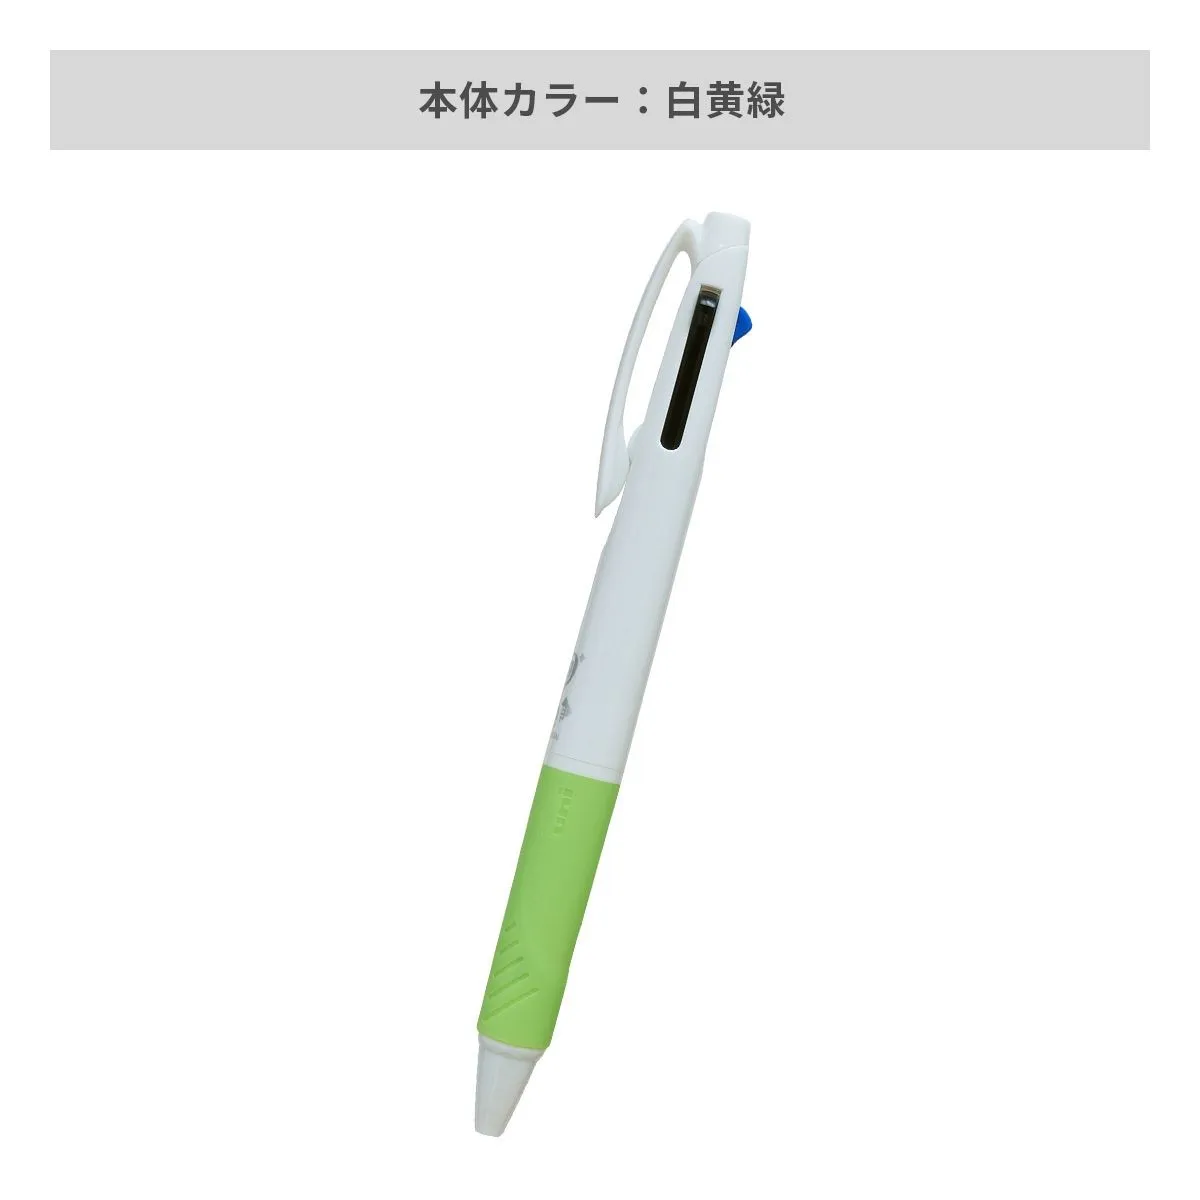 三菱鉛筆 ジェットストリーム 3色ボールペン AGピュア抗菌 白軸 0.7mm【名入れボールペン / インクジェット印刷】 画像5